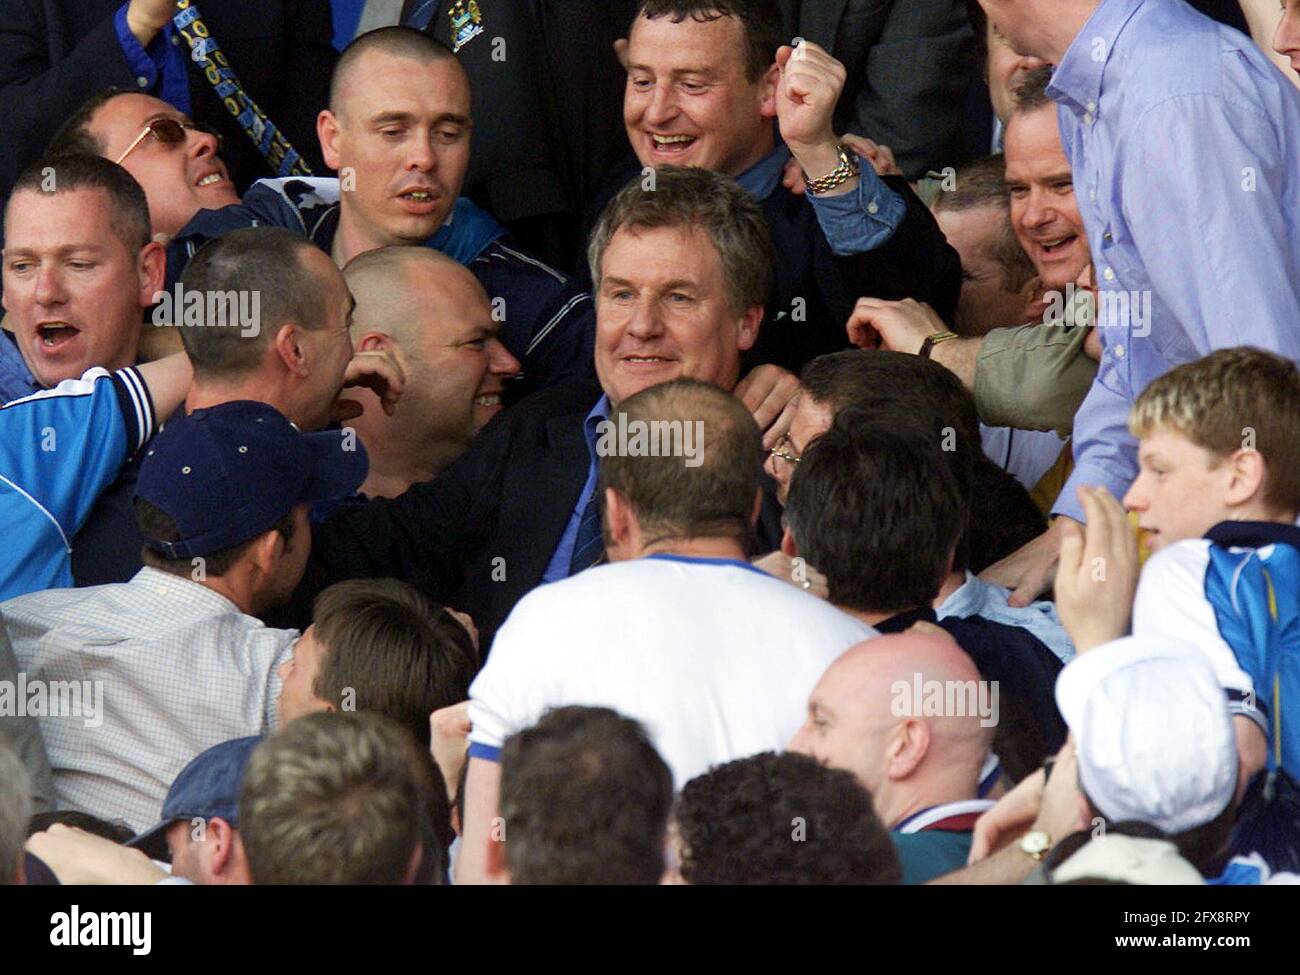 Fileboto vom 7-05-2000 von Manchester City Manager Joe Royle wird von den City Fans gratuliert, nachdem seine Mannschaft während des Spiels der Nationwide Division One gegen Blackburn zur Premiership befördert wurde. Ausgabedatum: Mittwoch, 26. Mai 2021. Stockfoto